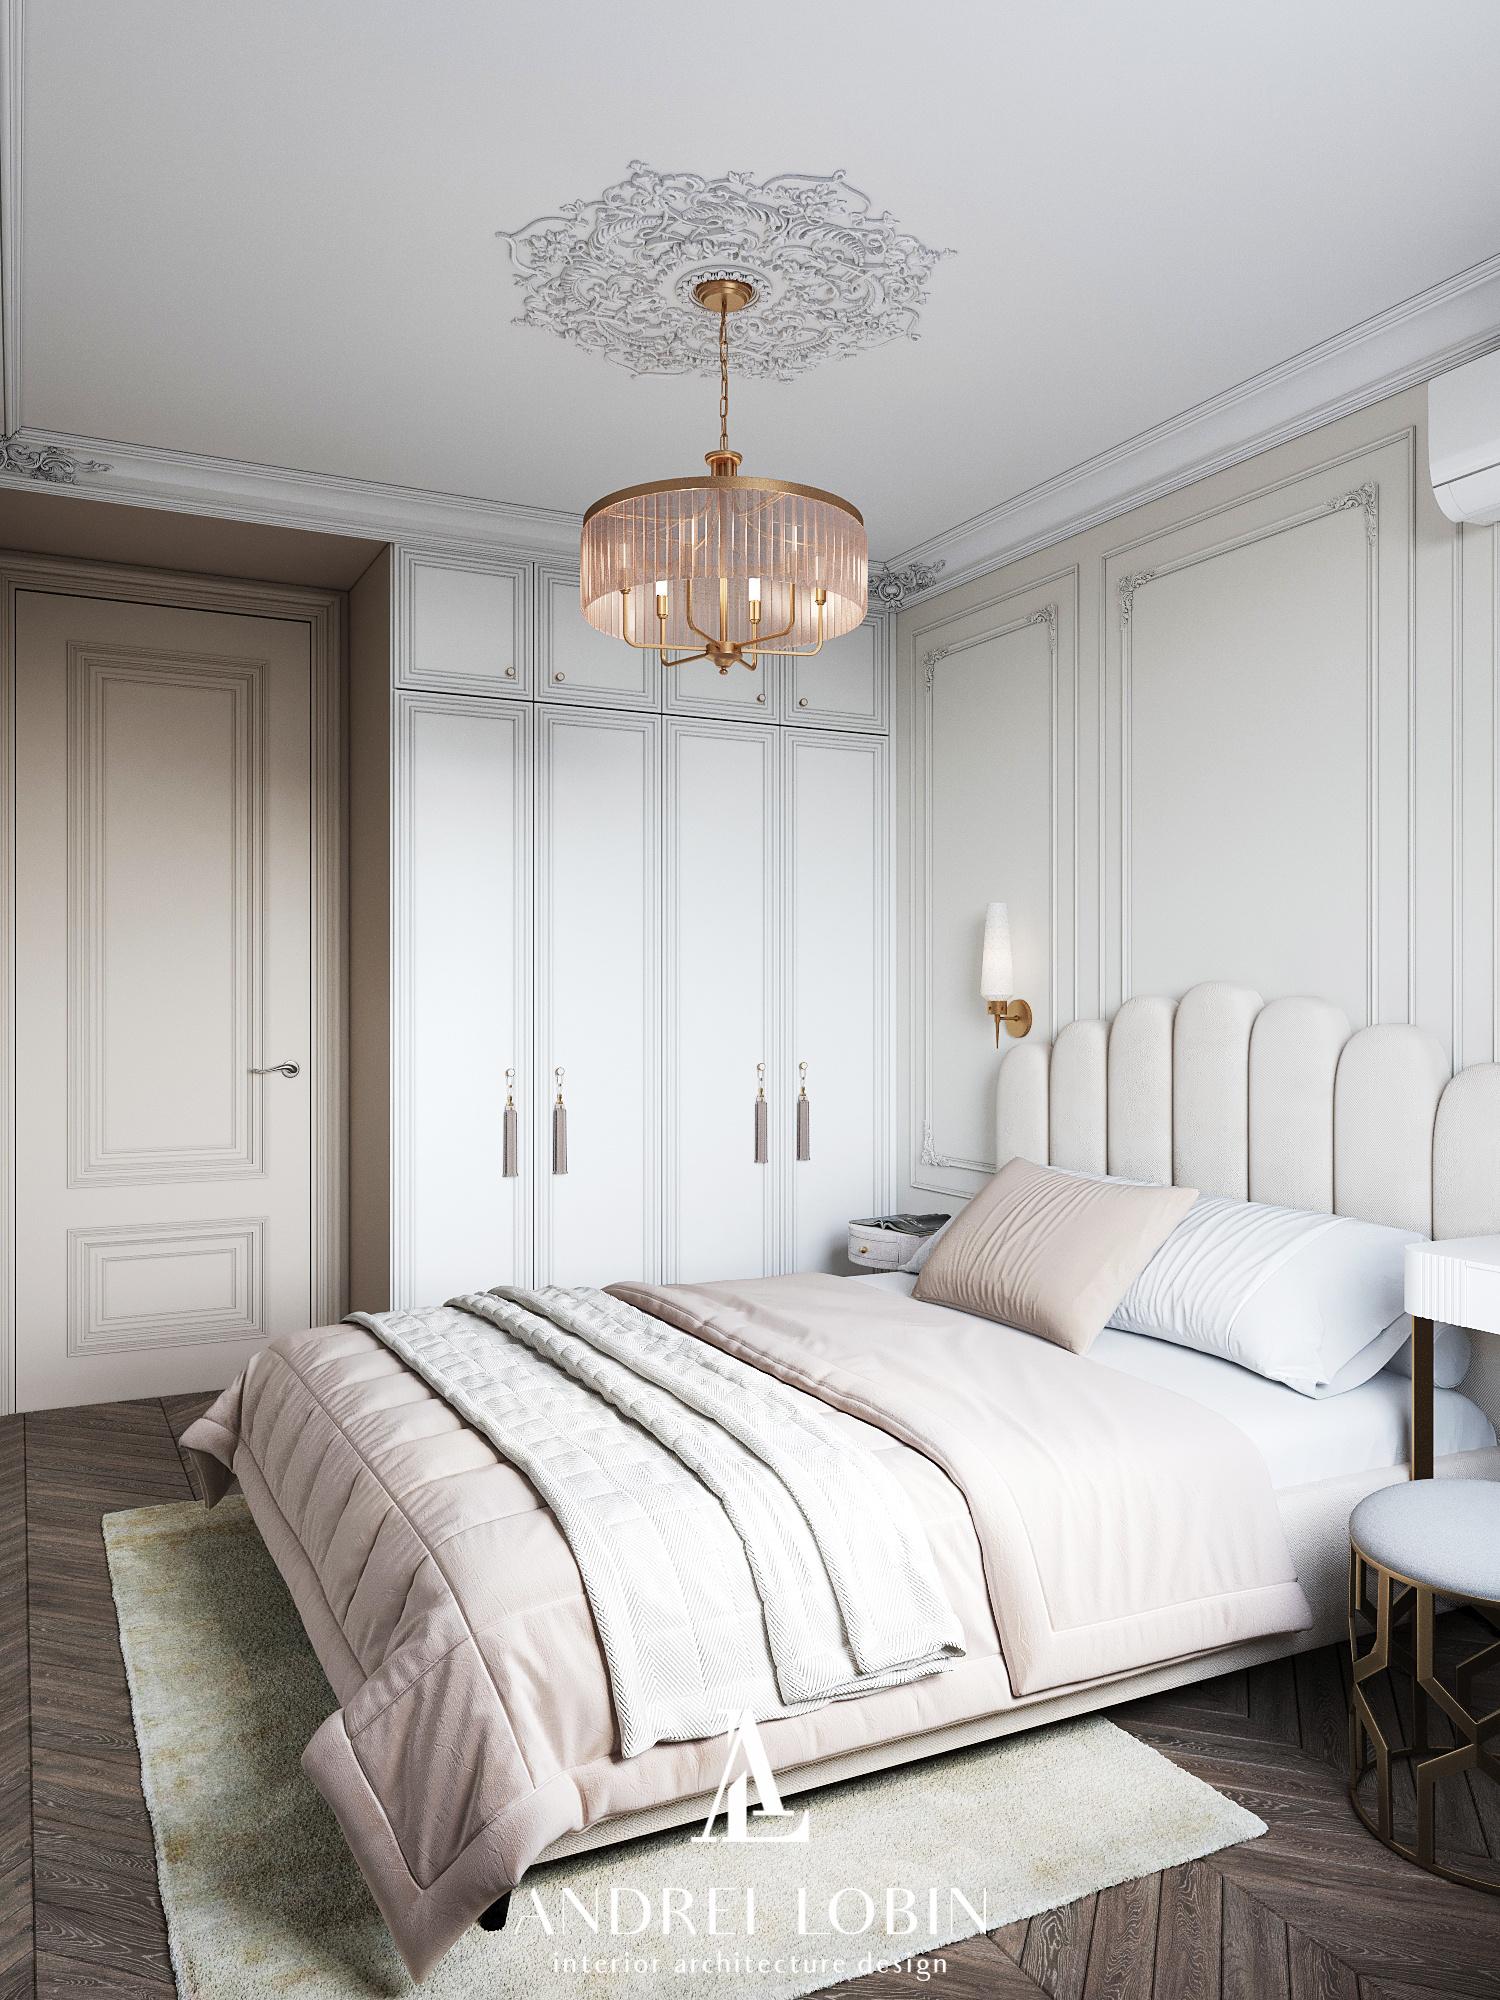 Интерьер спальни с аркой и светильниками над кроватью в классическом стиле и готике